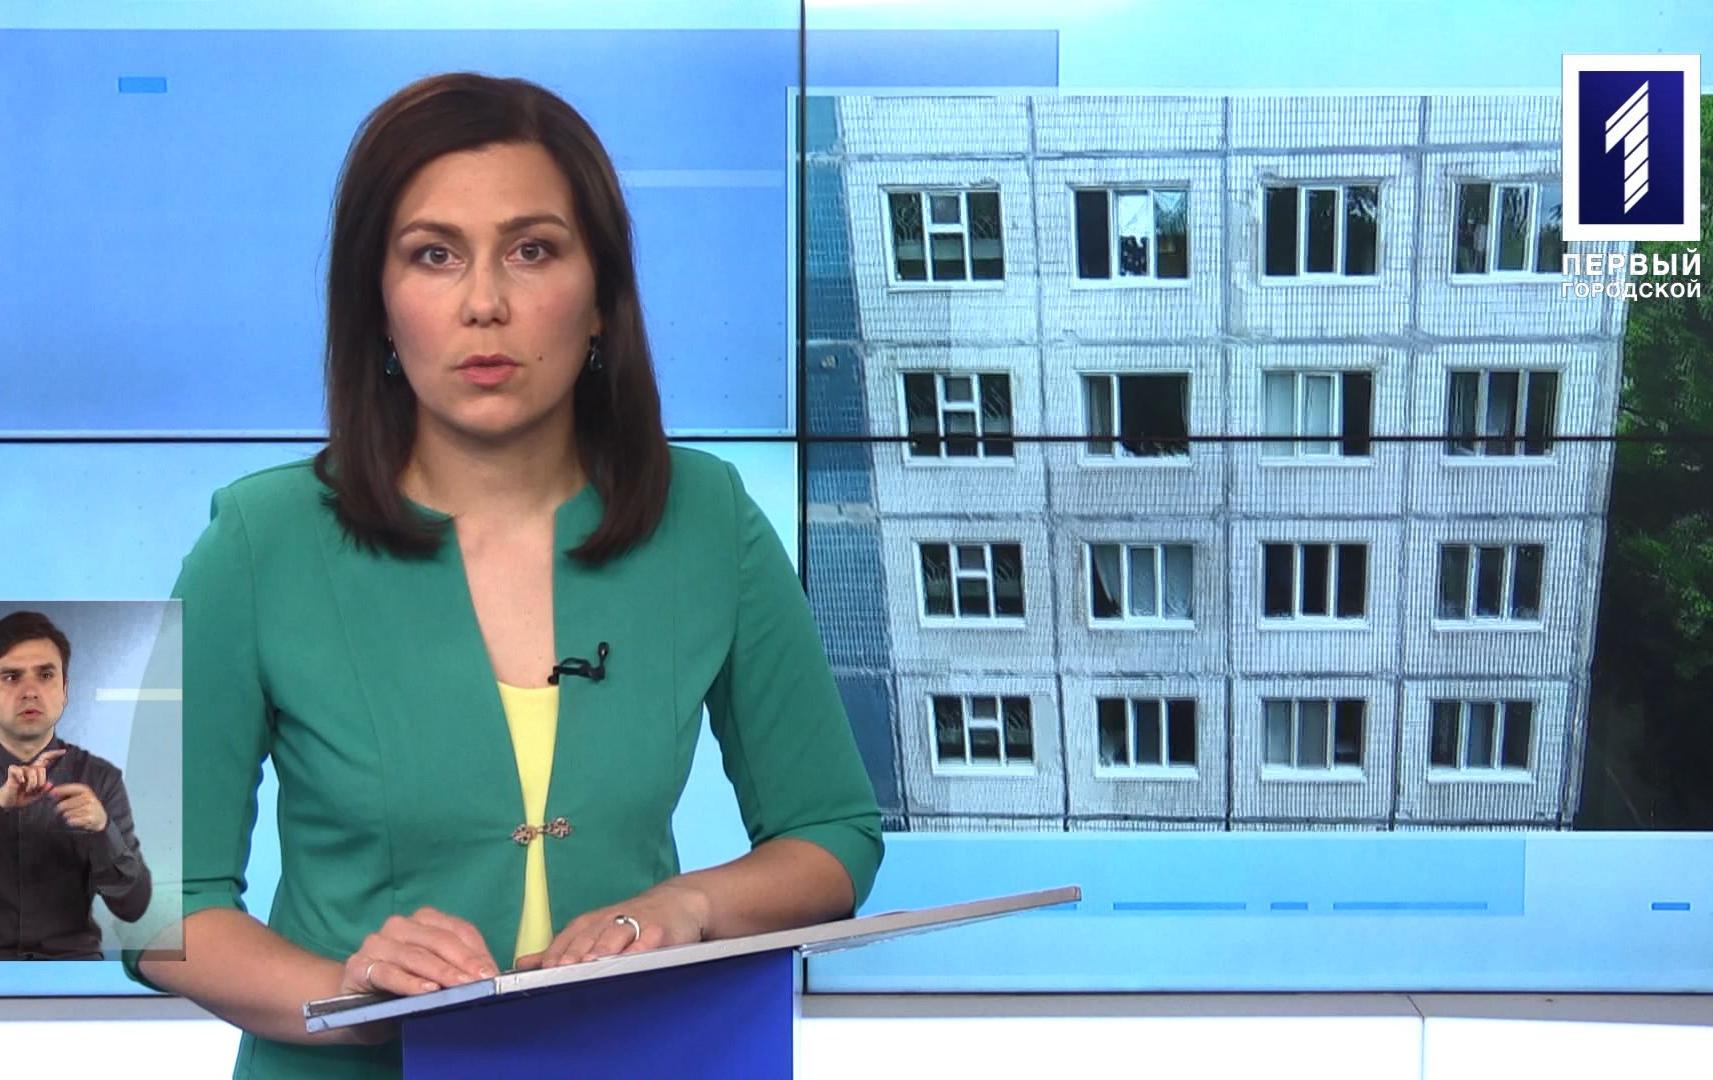 Новини Кривбасу 2 червня (сурдопереклад): COVID-19, намагався спуститися з вікна по простирадлам, меддопомога